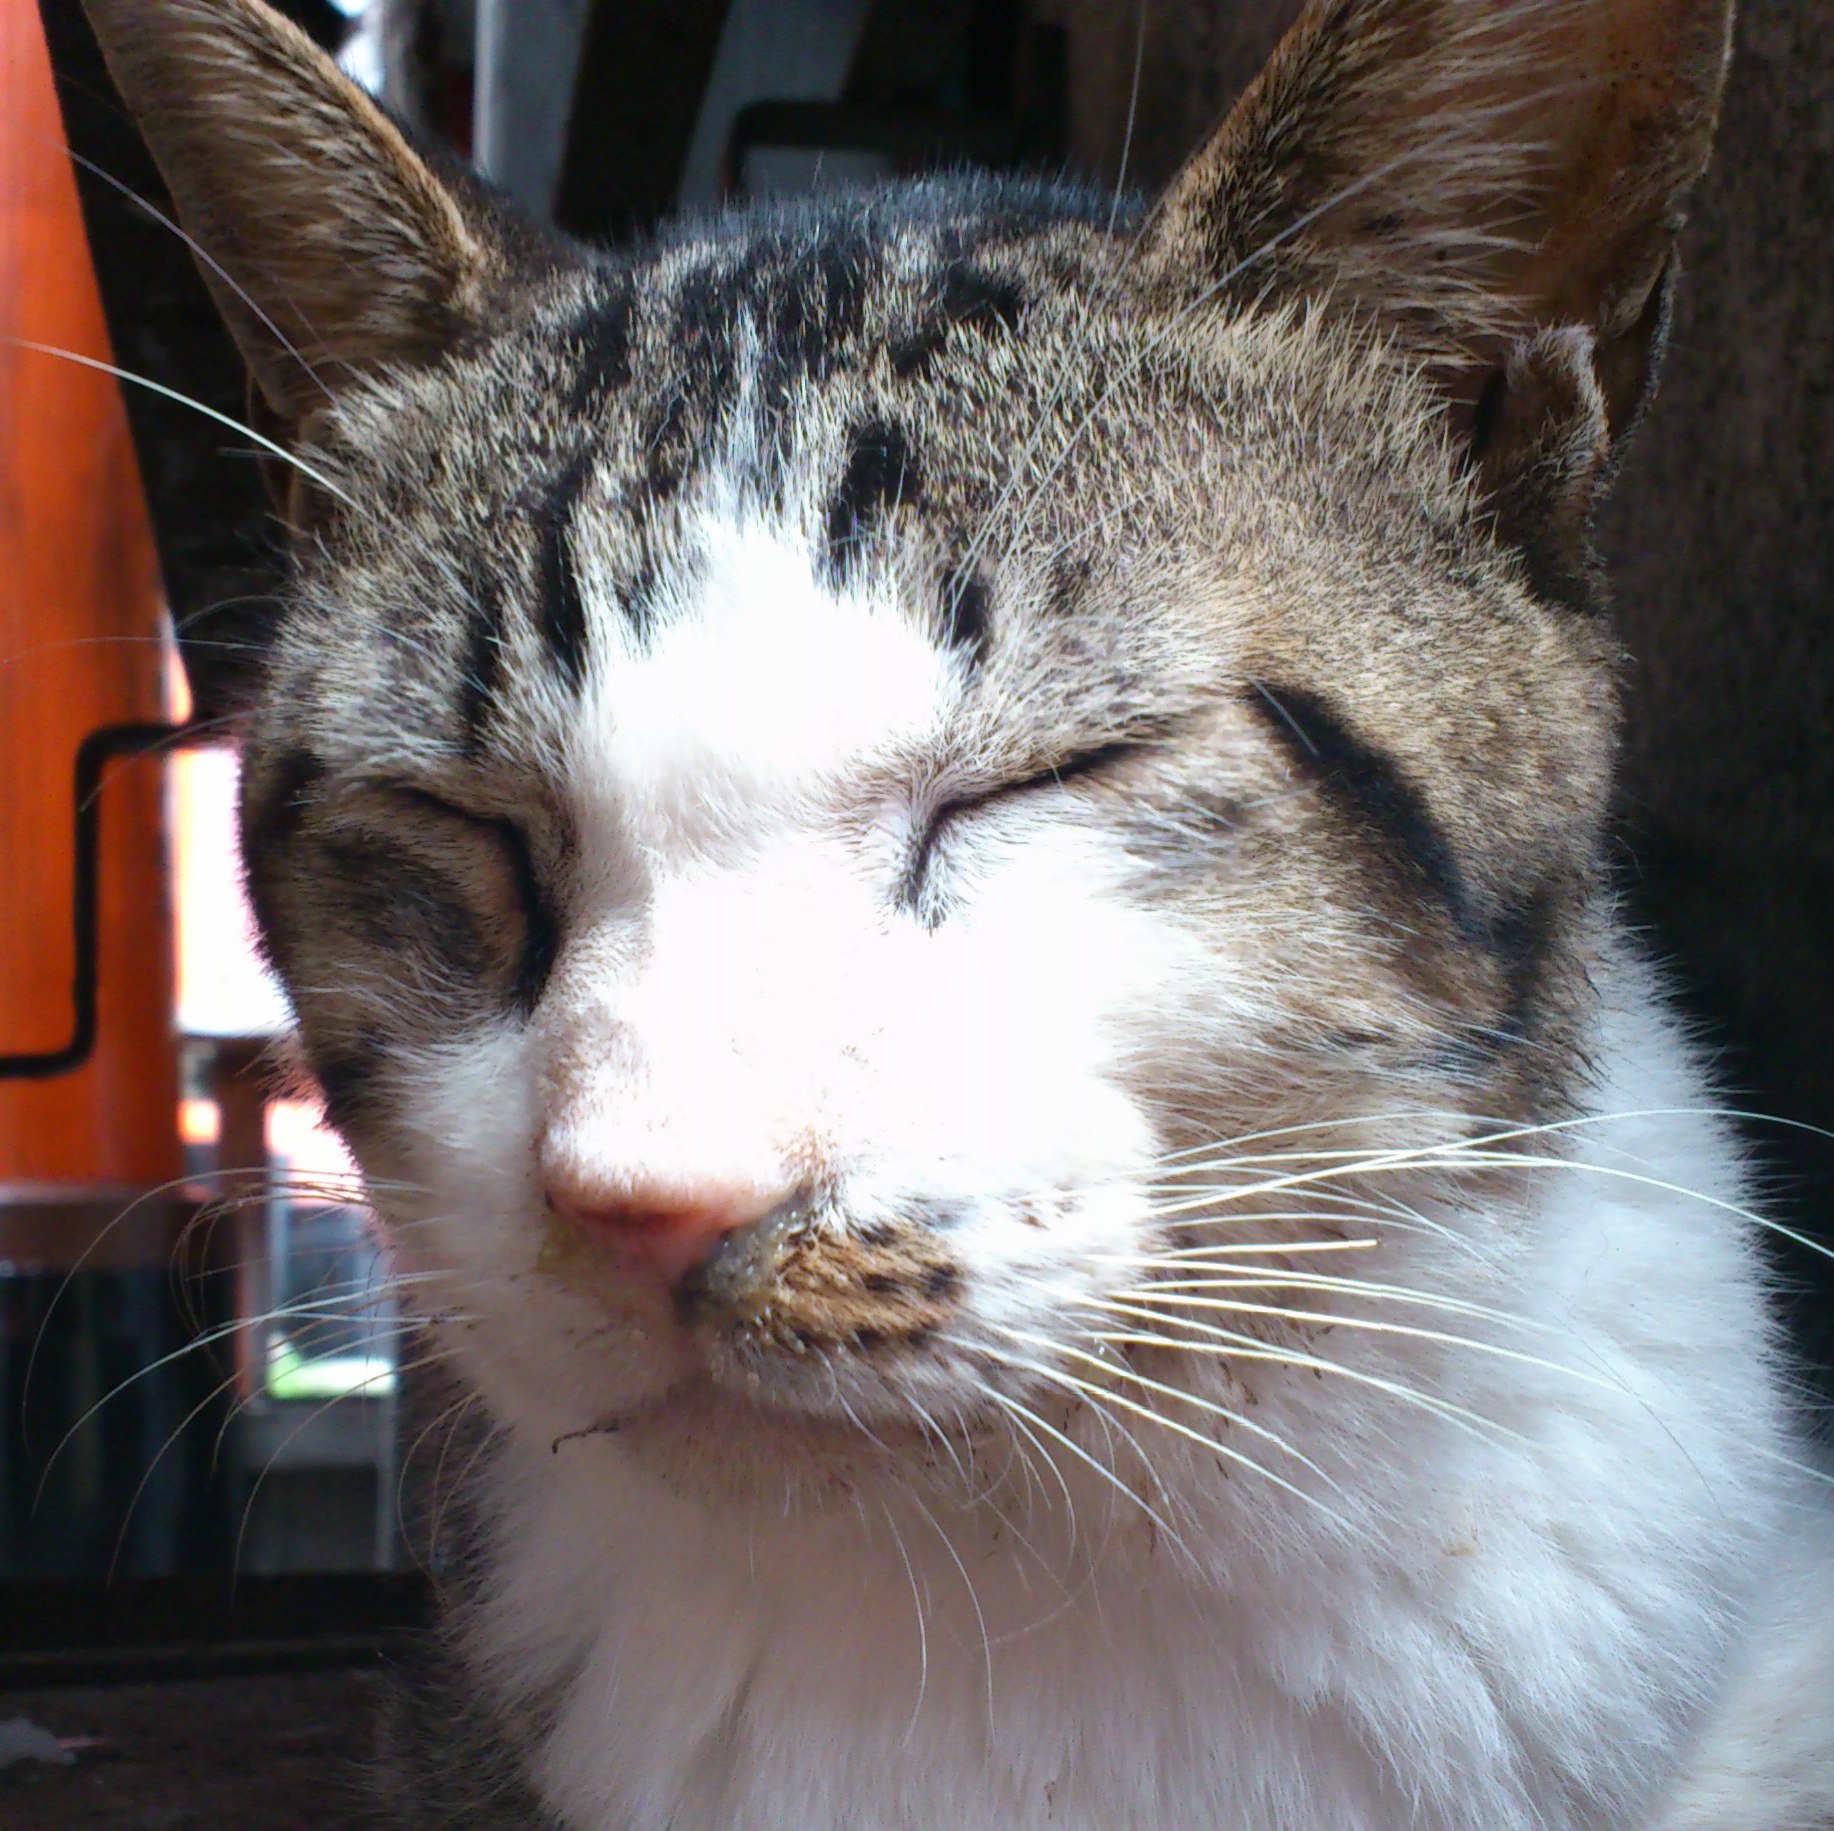 福岡の猫好きウェブエンジニア。
家のこととか子どものことが最近メイン